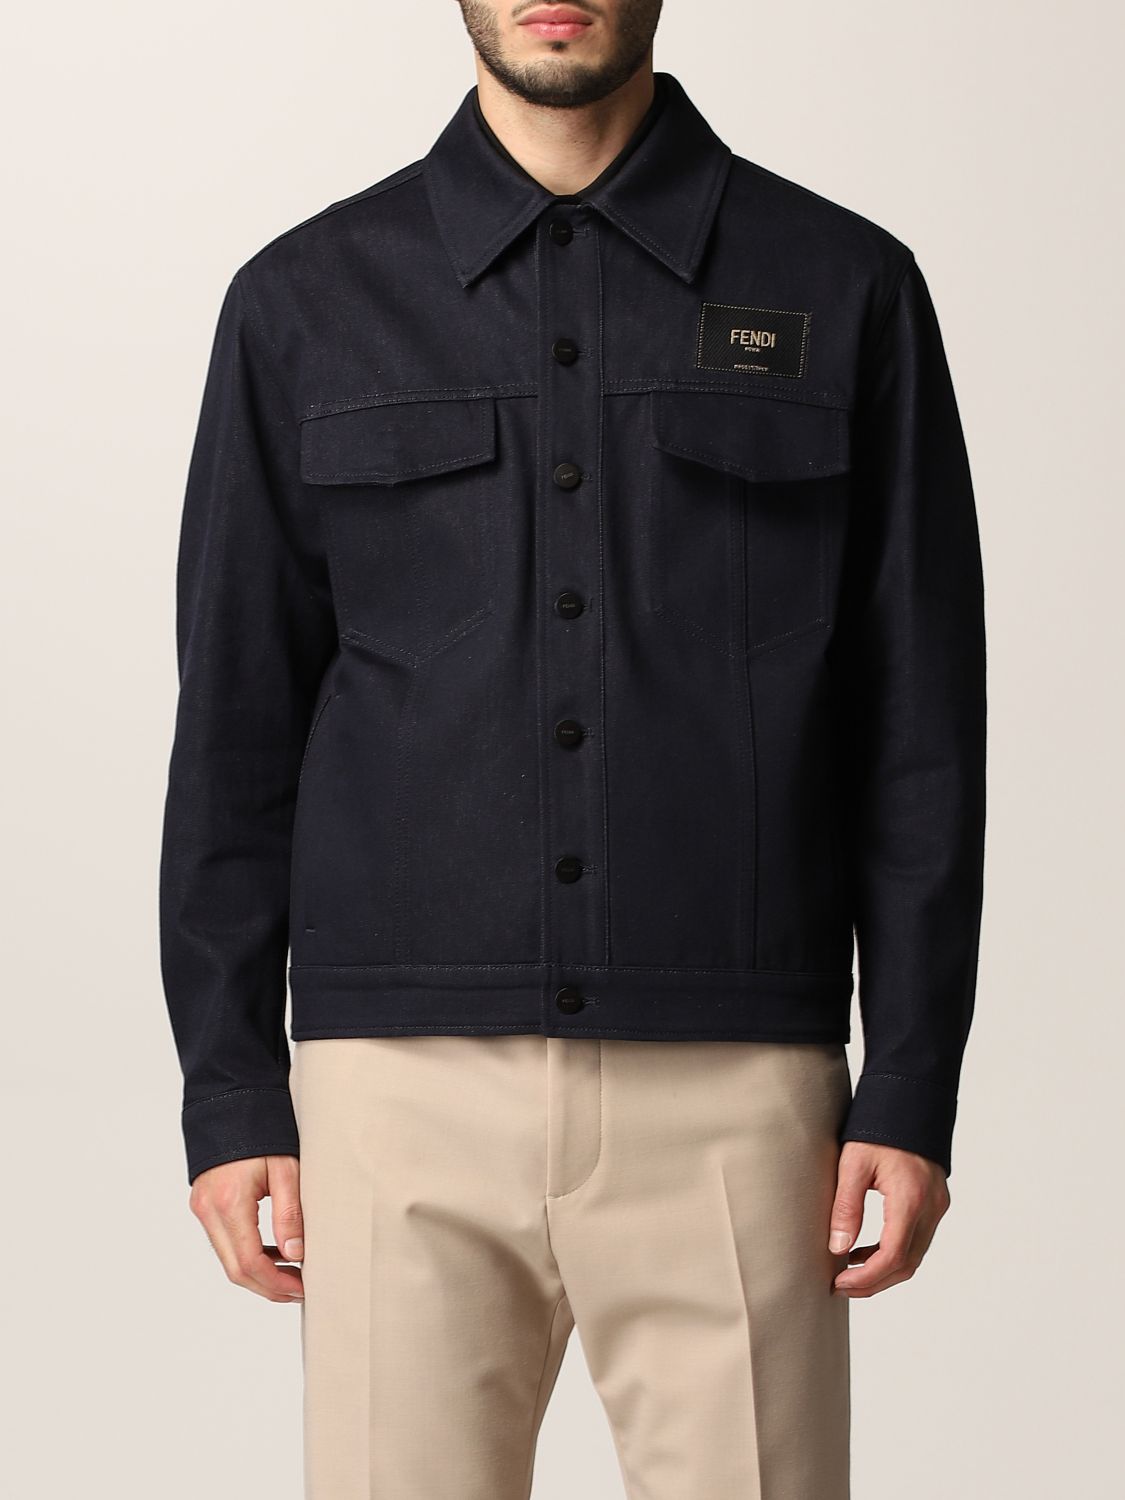 FENDI: jacket for man - Denim | Fendi jacket FW1027 AIZB online at